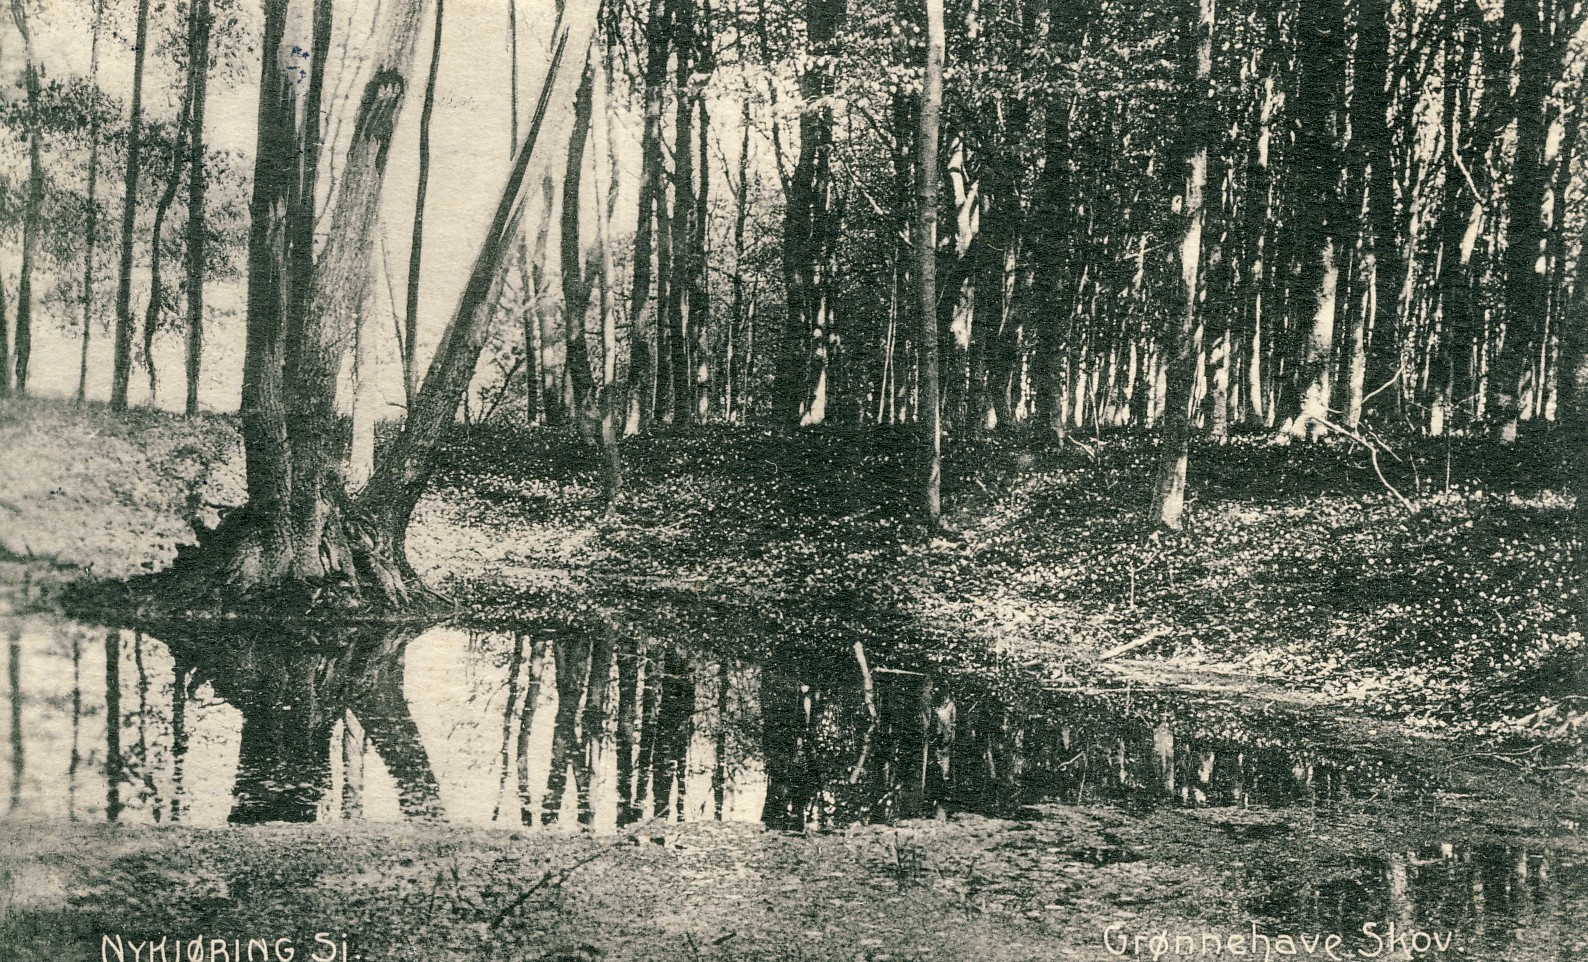 Grønnehave Skov 1911 (B90740)